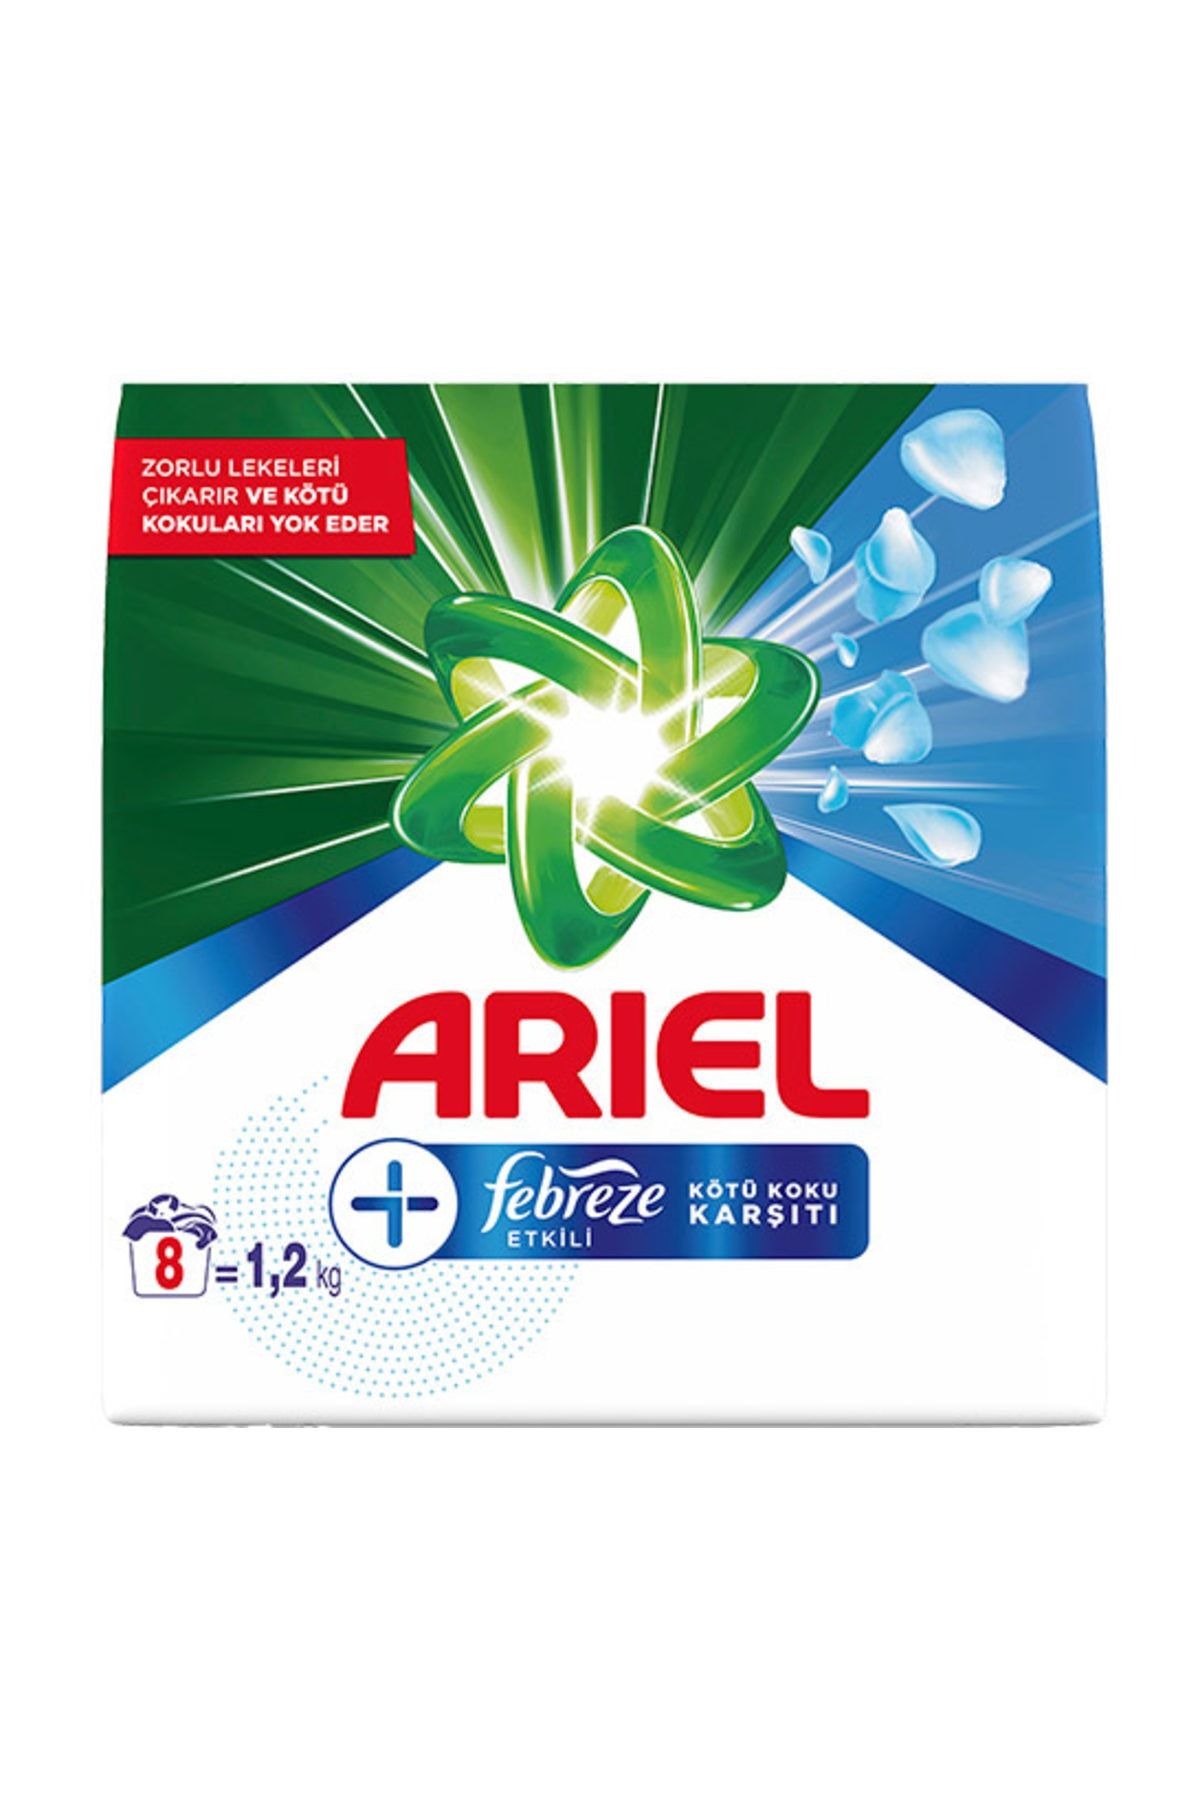 Ariel Plus 1,2 kg Toz Çamaşır Deterjanı Febreze Etkili Parlak Renkler